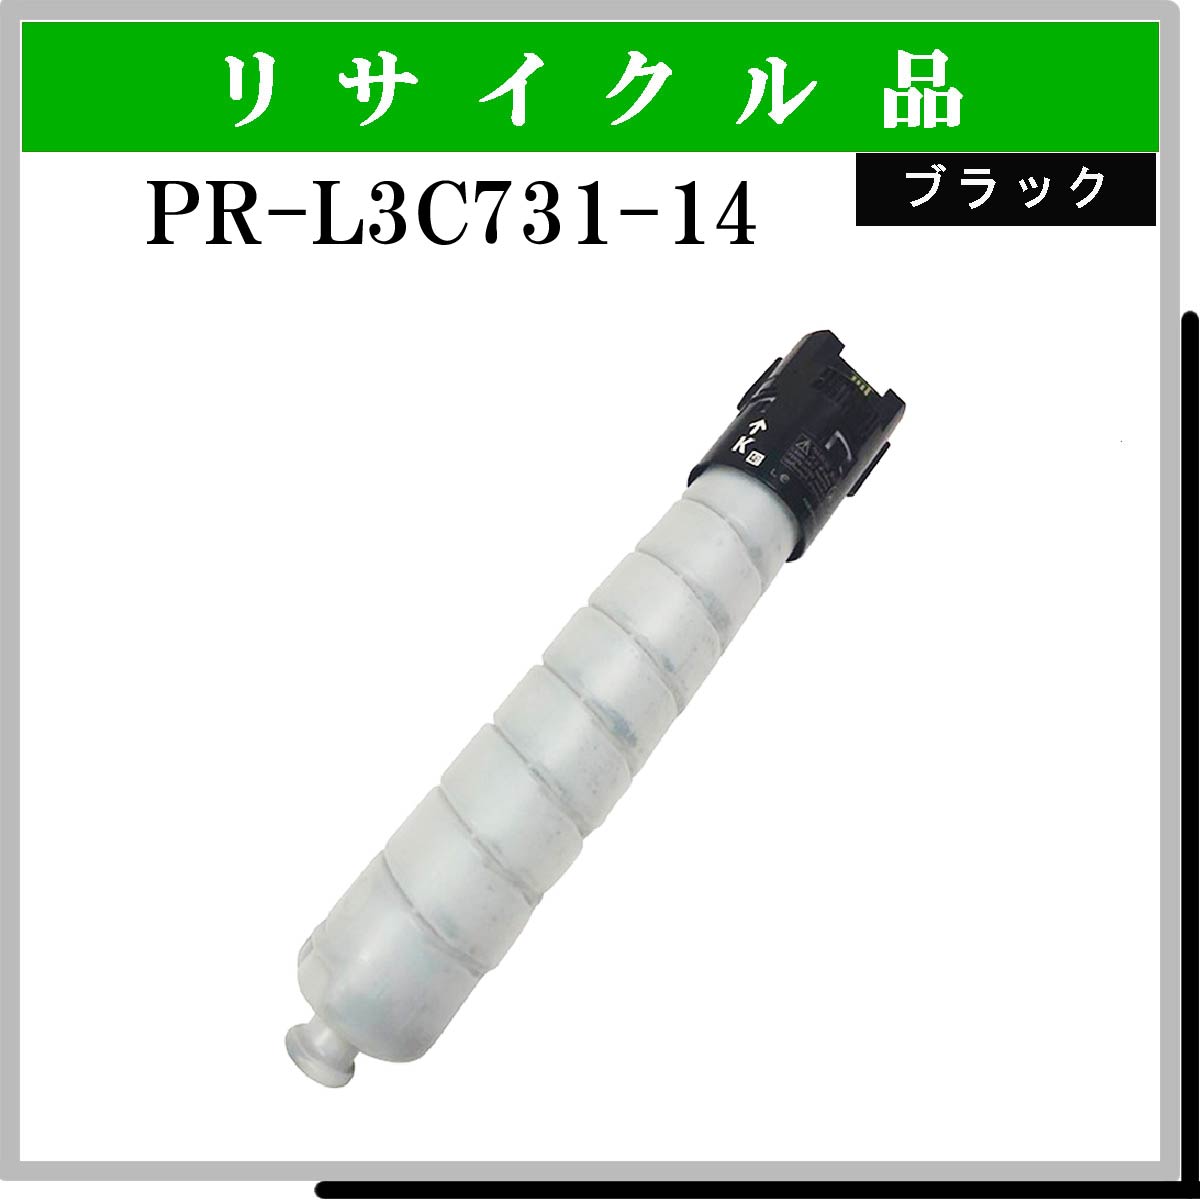 PR-L3C731-14